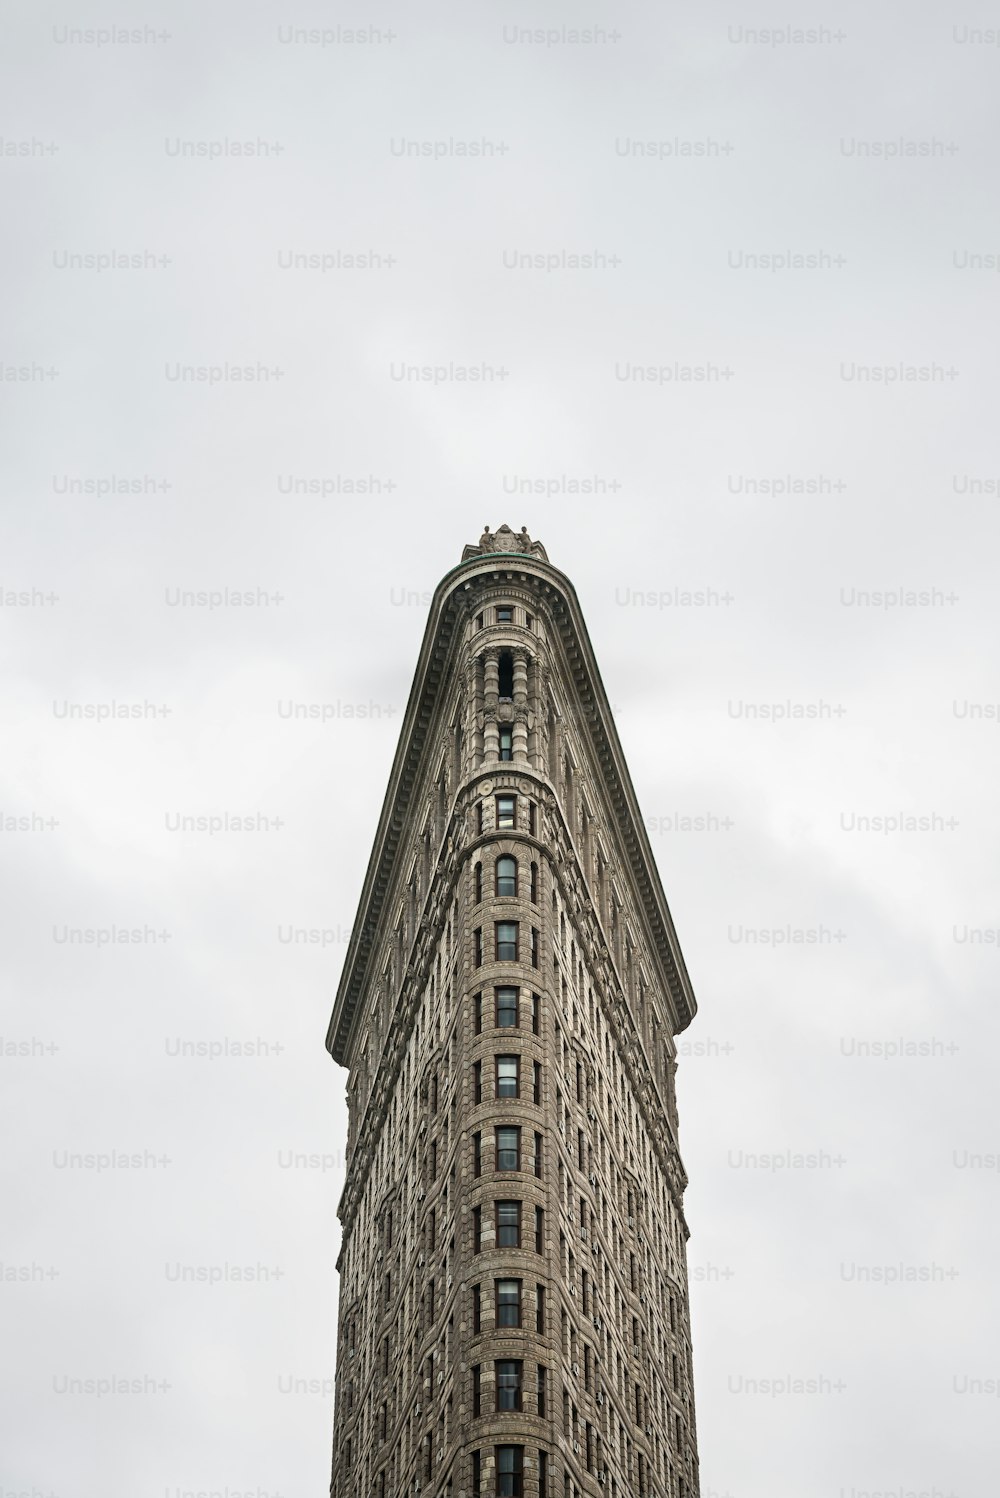 뉴욕의 플랫아이언 빌딩 전면 모습. 원래 풀러 빌딩으로 알려진이 건물은 시카고의 다니엘 번햄 (Daniel Burnham)의 설계로 1902 년에 완공되었으며 당시 도시에서 가장 높은 건물 중 하나가되었으며 14 번가 북쪽에 단 두 개의 고층 빌딩 중 하나가되었습니다.